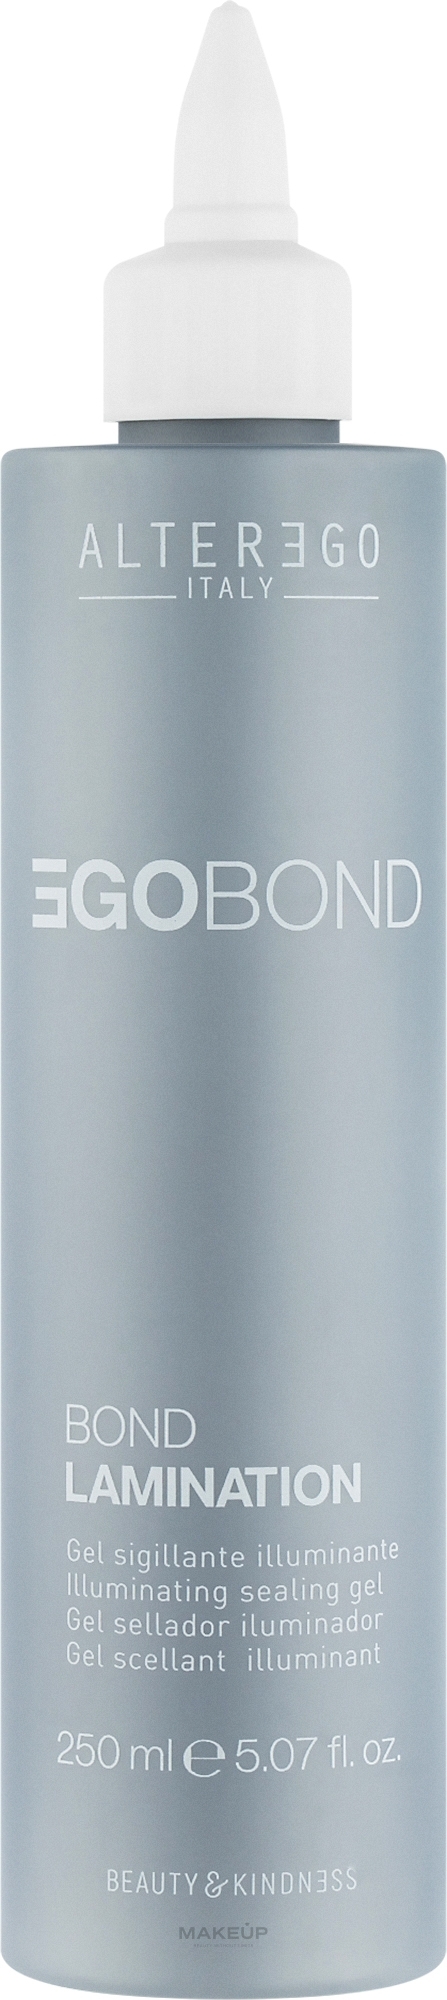 Гель для ламинирования и блеска волос - Alter Ego Egobond Bond Lamination — фото 250ml